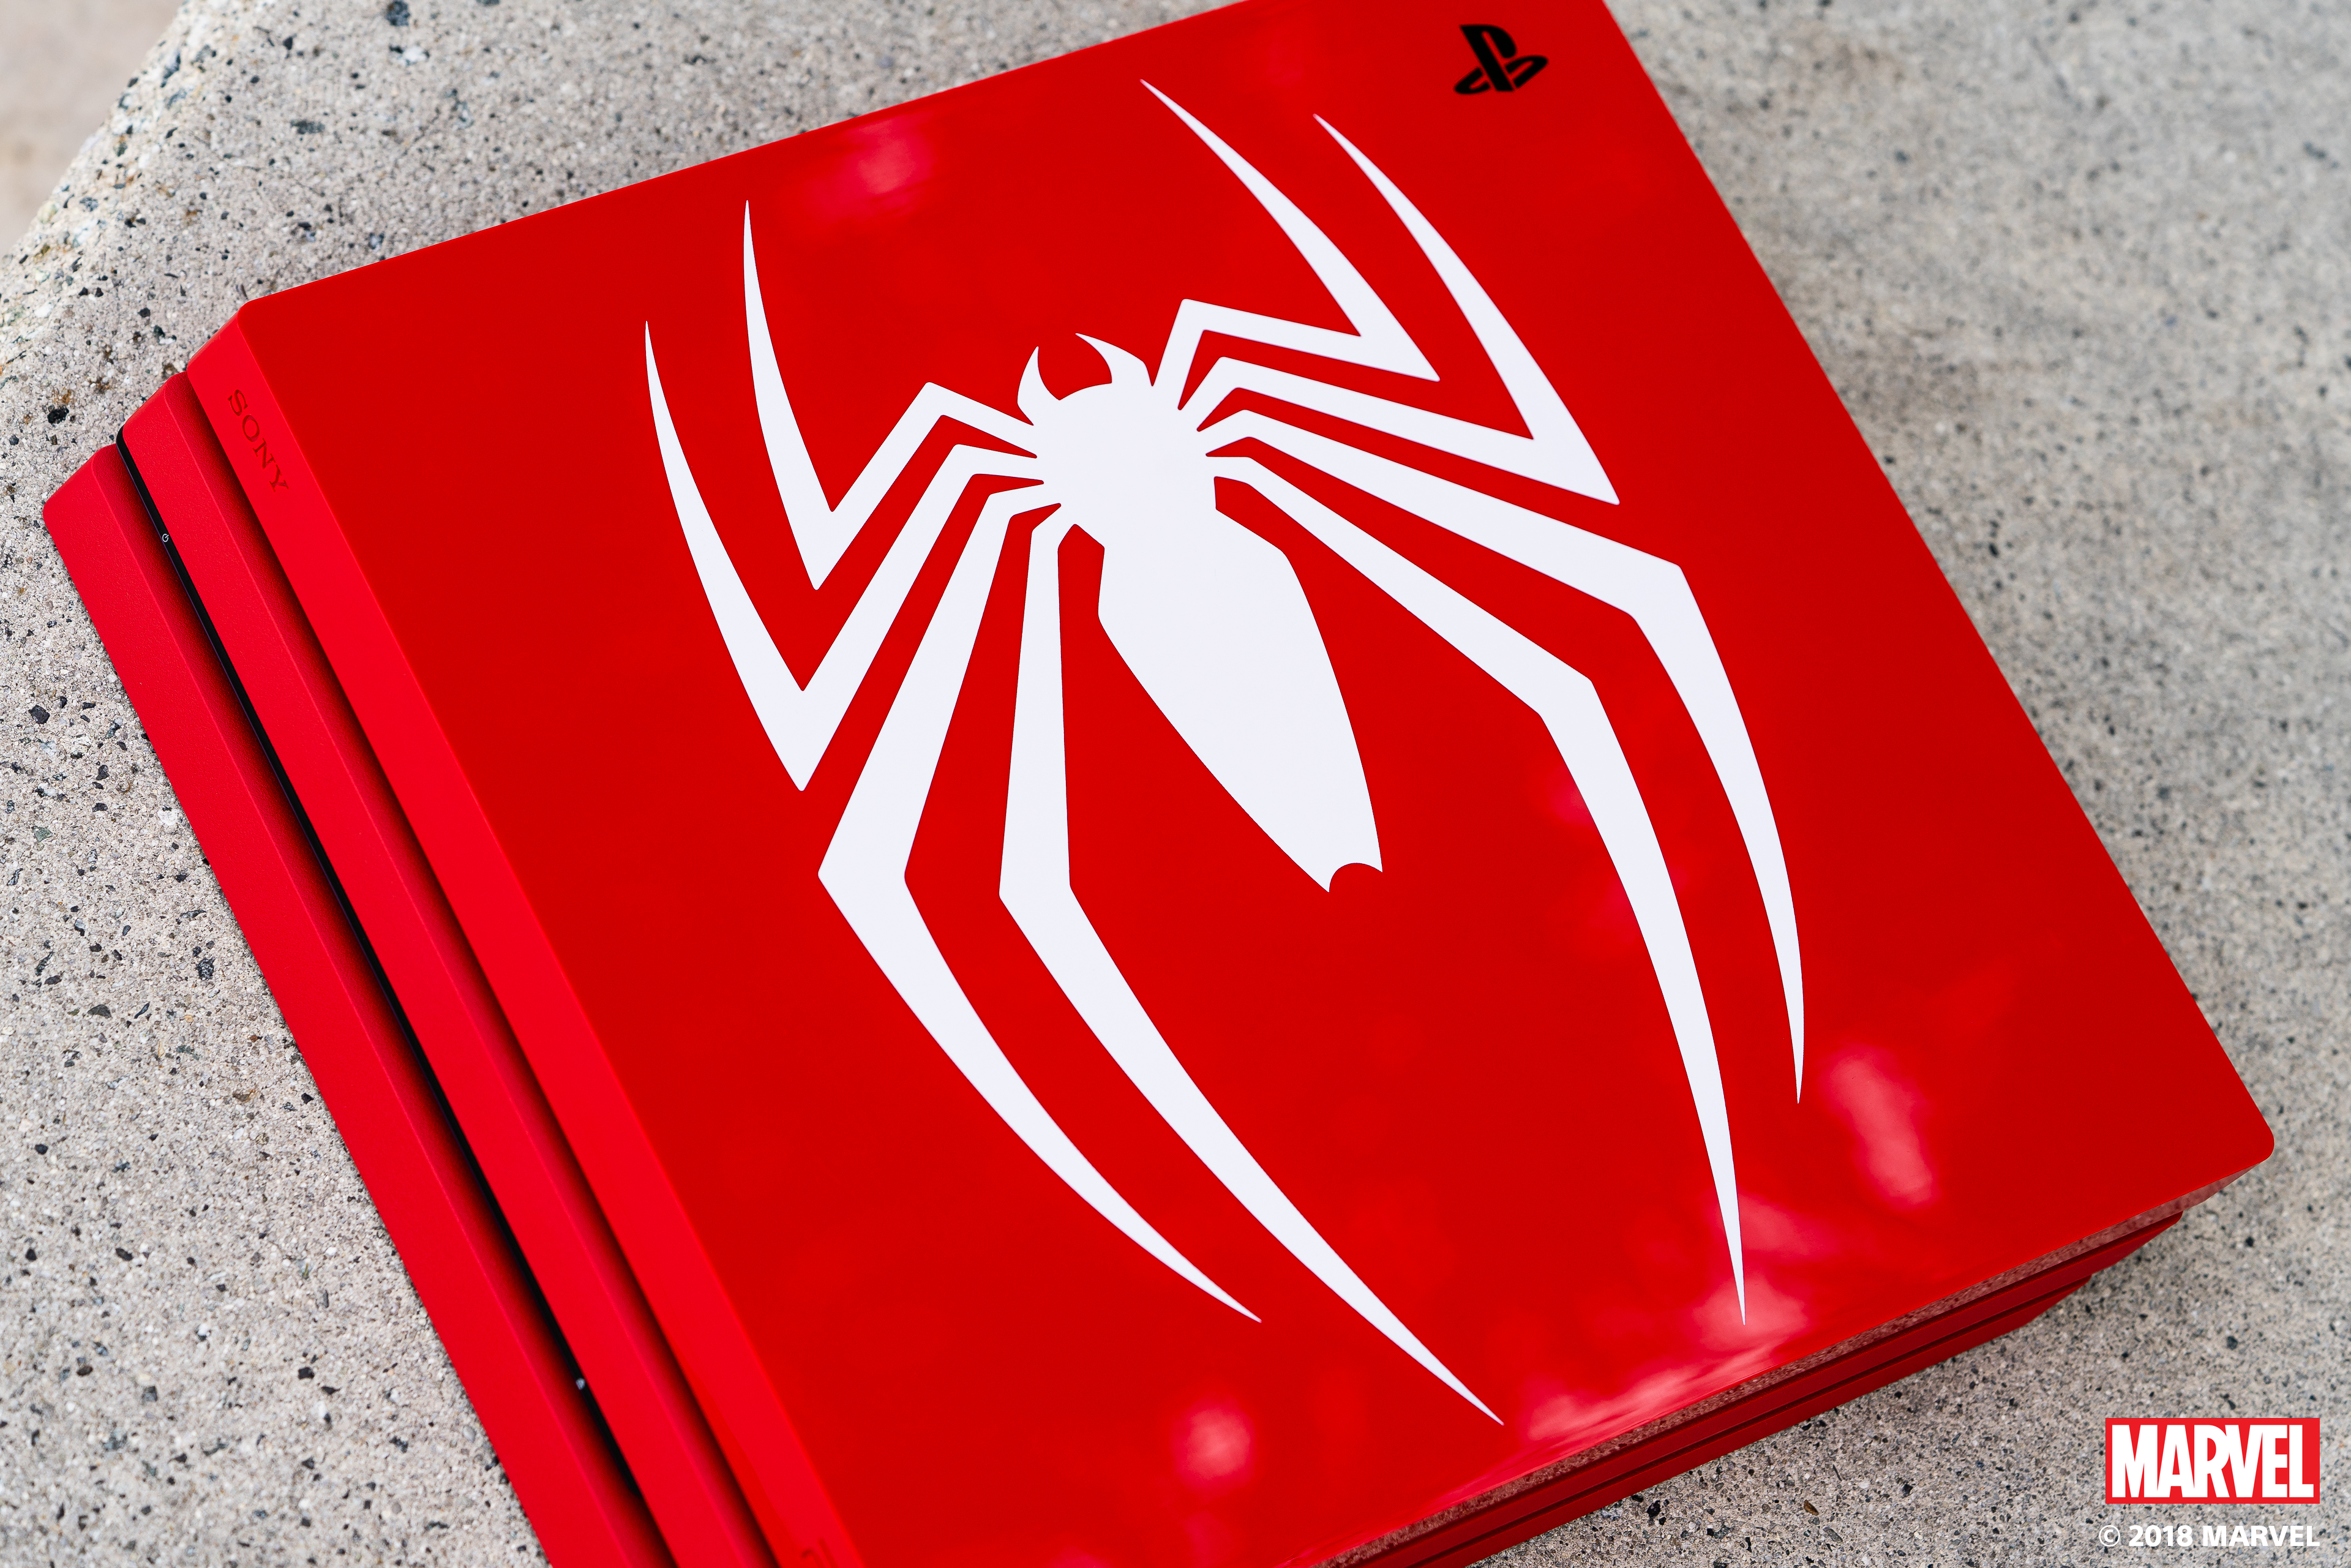 Marvel's Spider-Man PS4 Pro